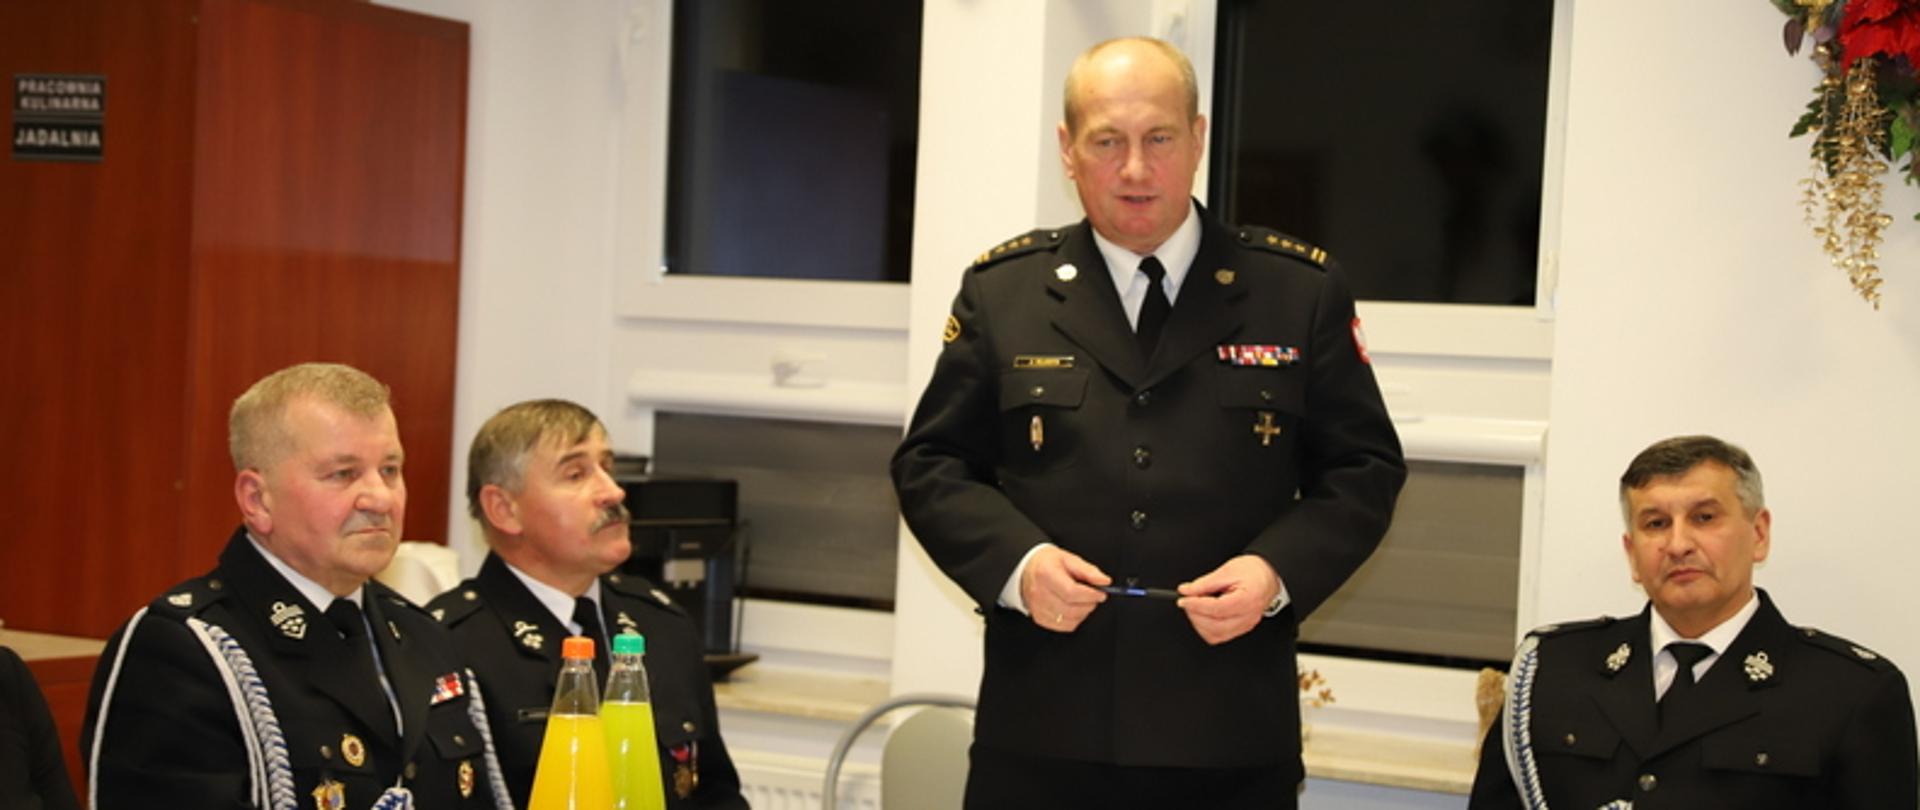 Na zdjęciu widzimy przemawiającego komendanta powiatowego PSP w Leżajsku na zebraniu sprawozdawczym OSP.